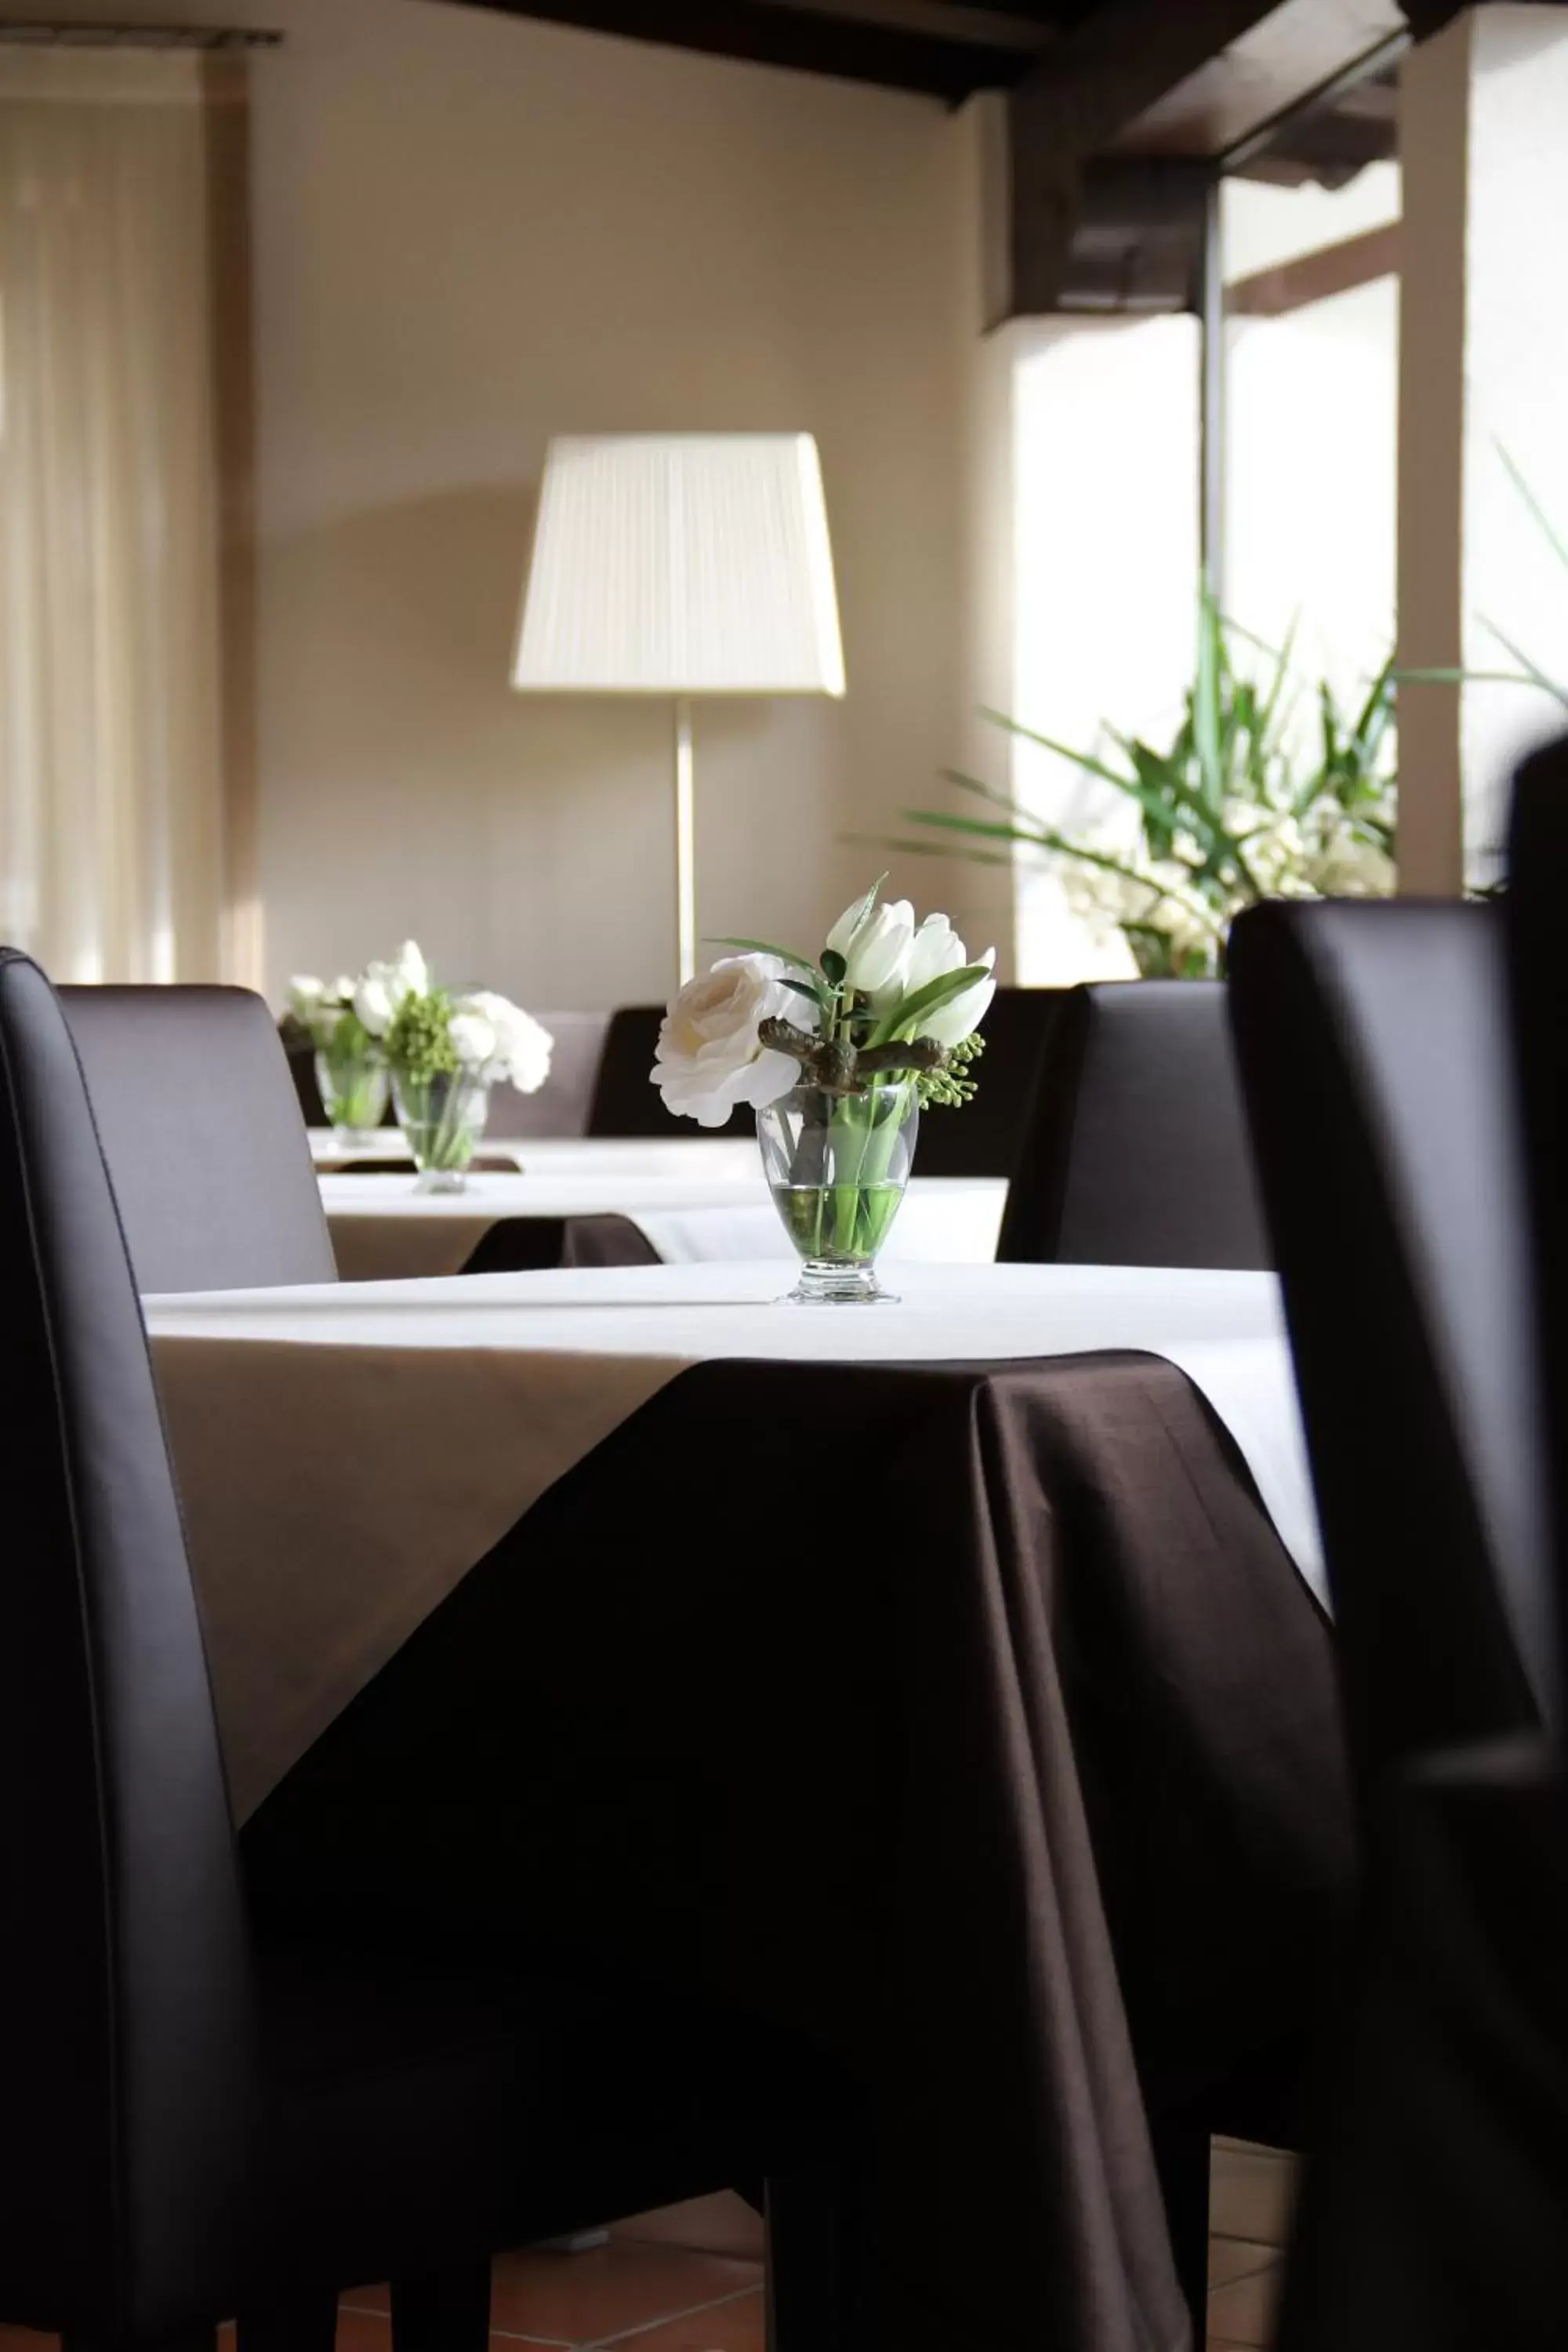 Restaurant/Places to Eat in GREEN GARDEN Resort - Smart Hotel